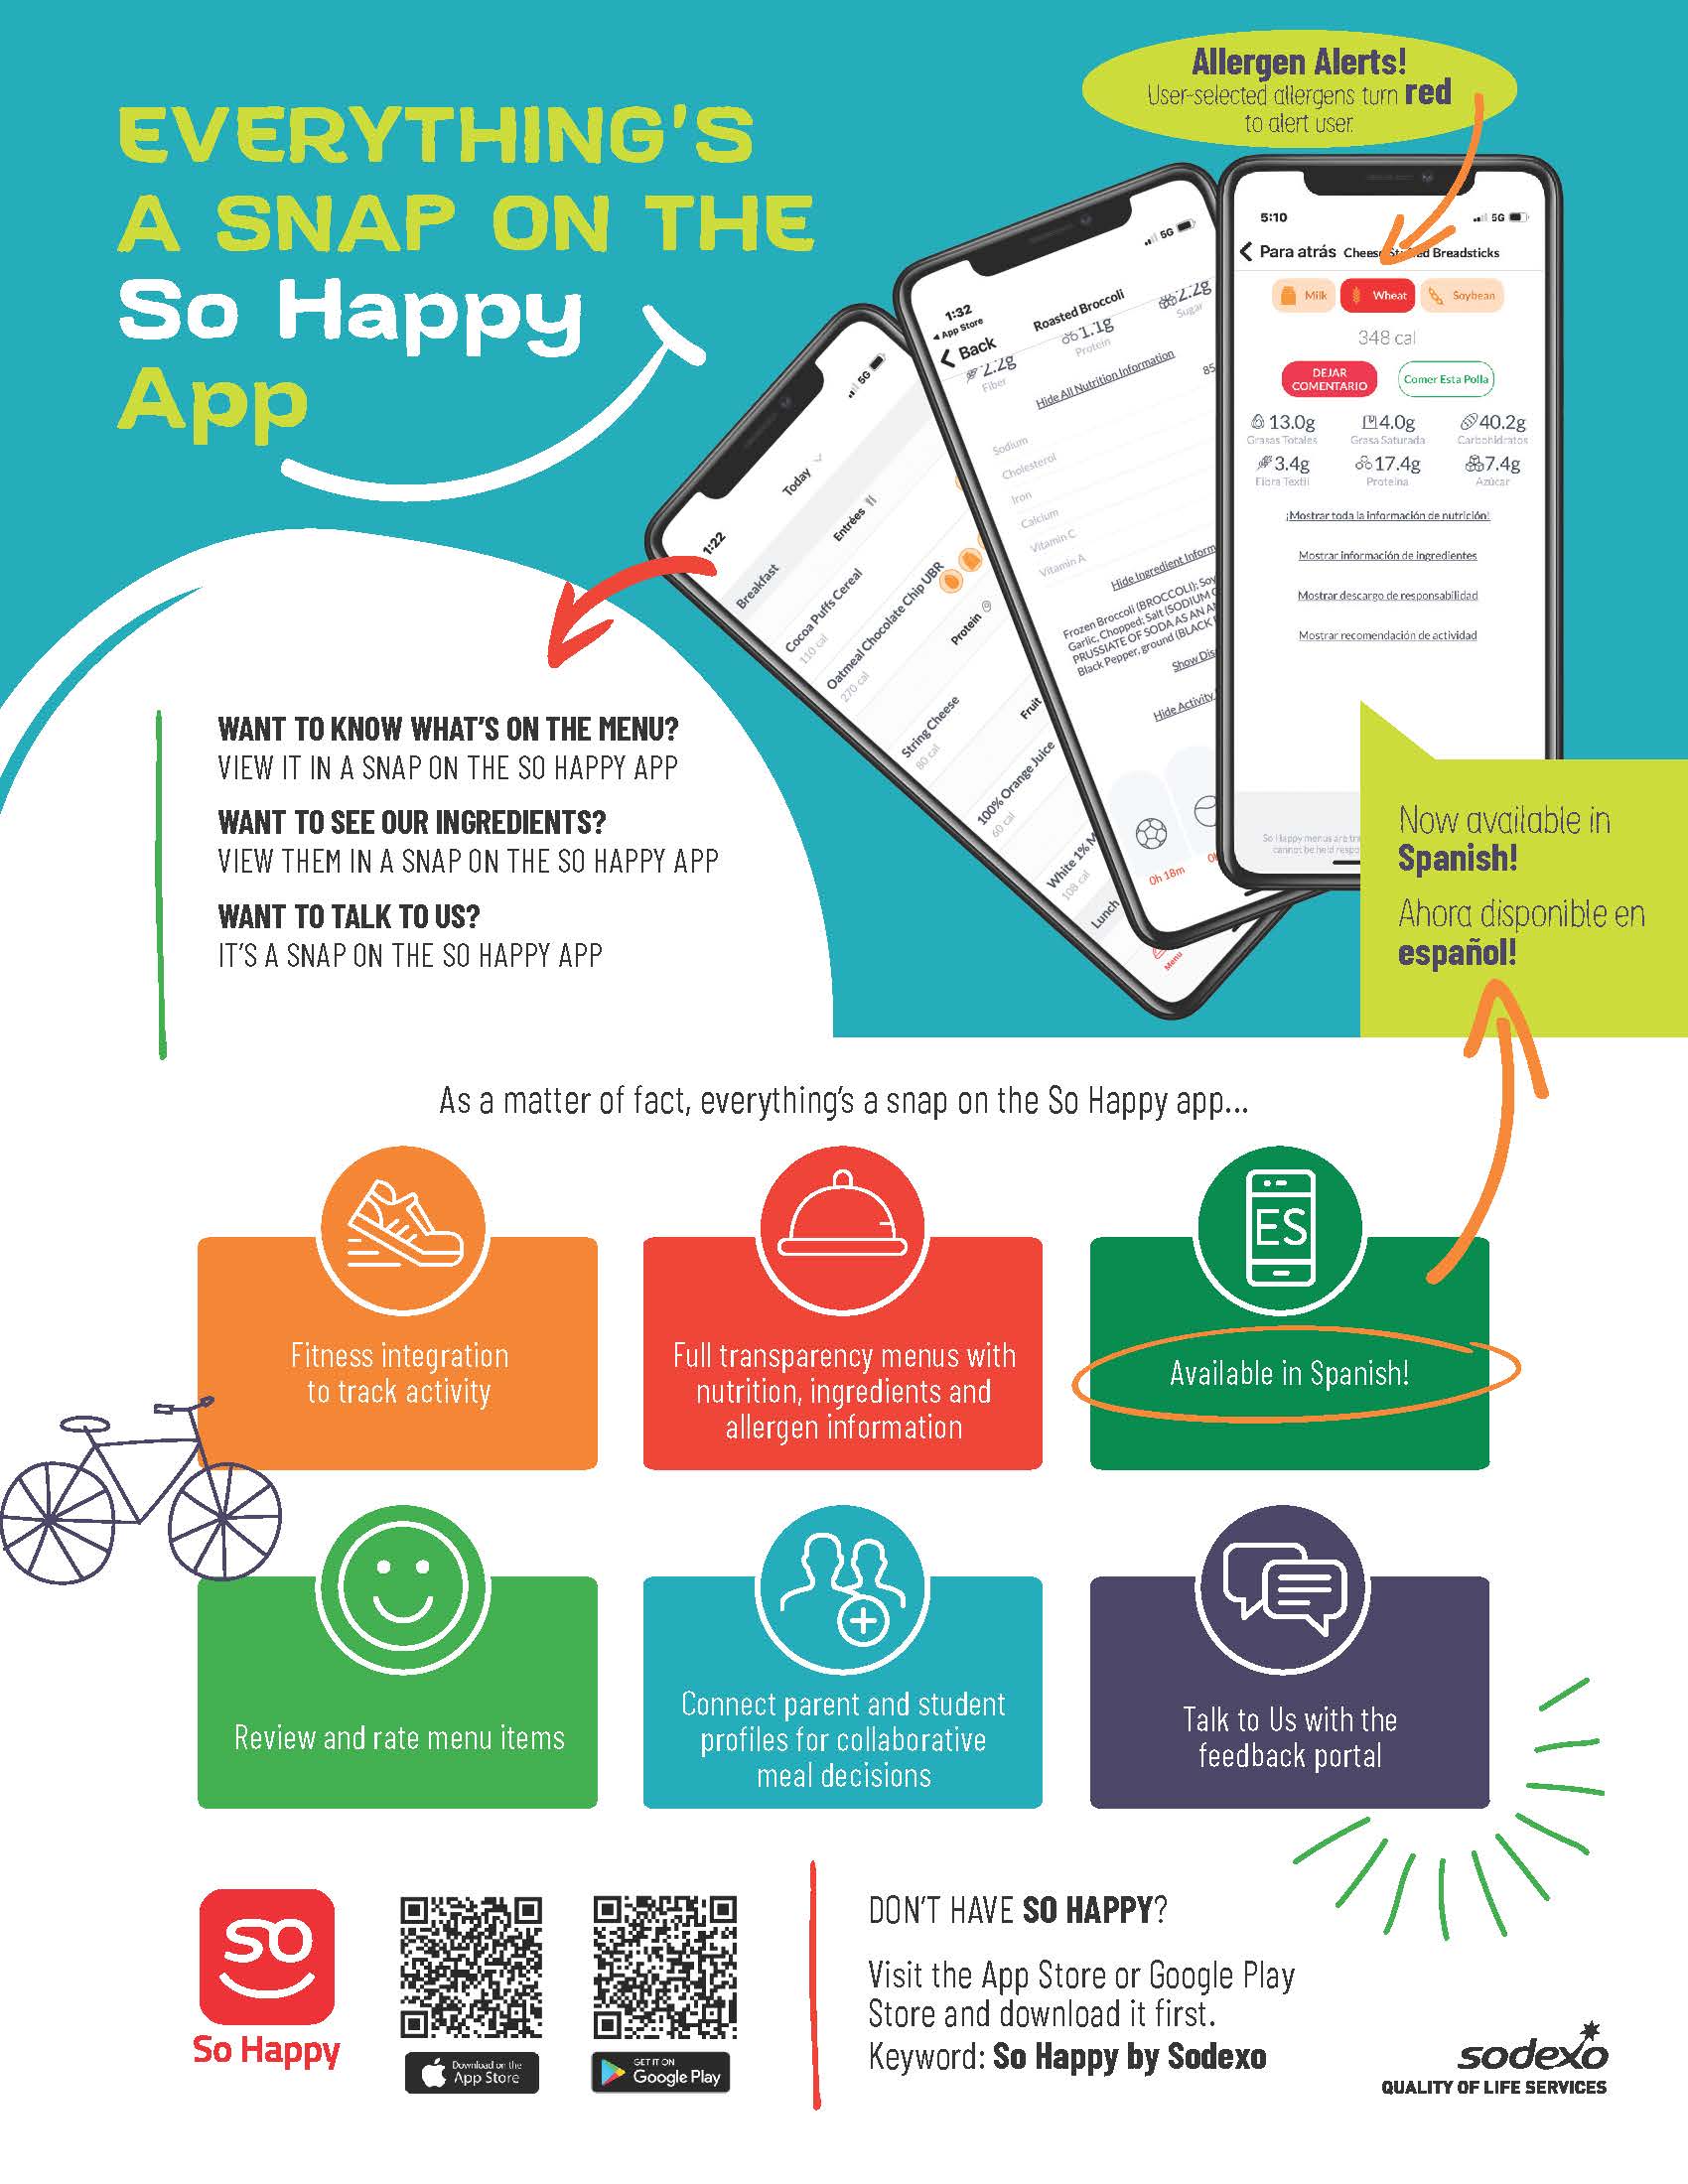 So Happy App Flyer Image